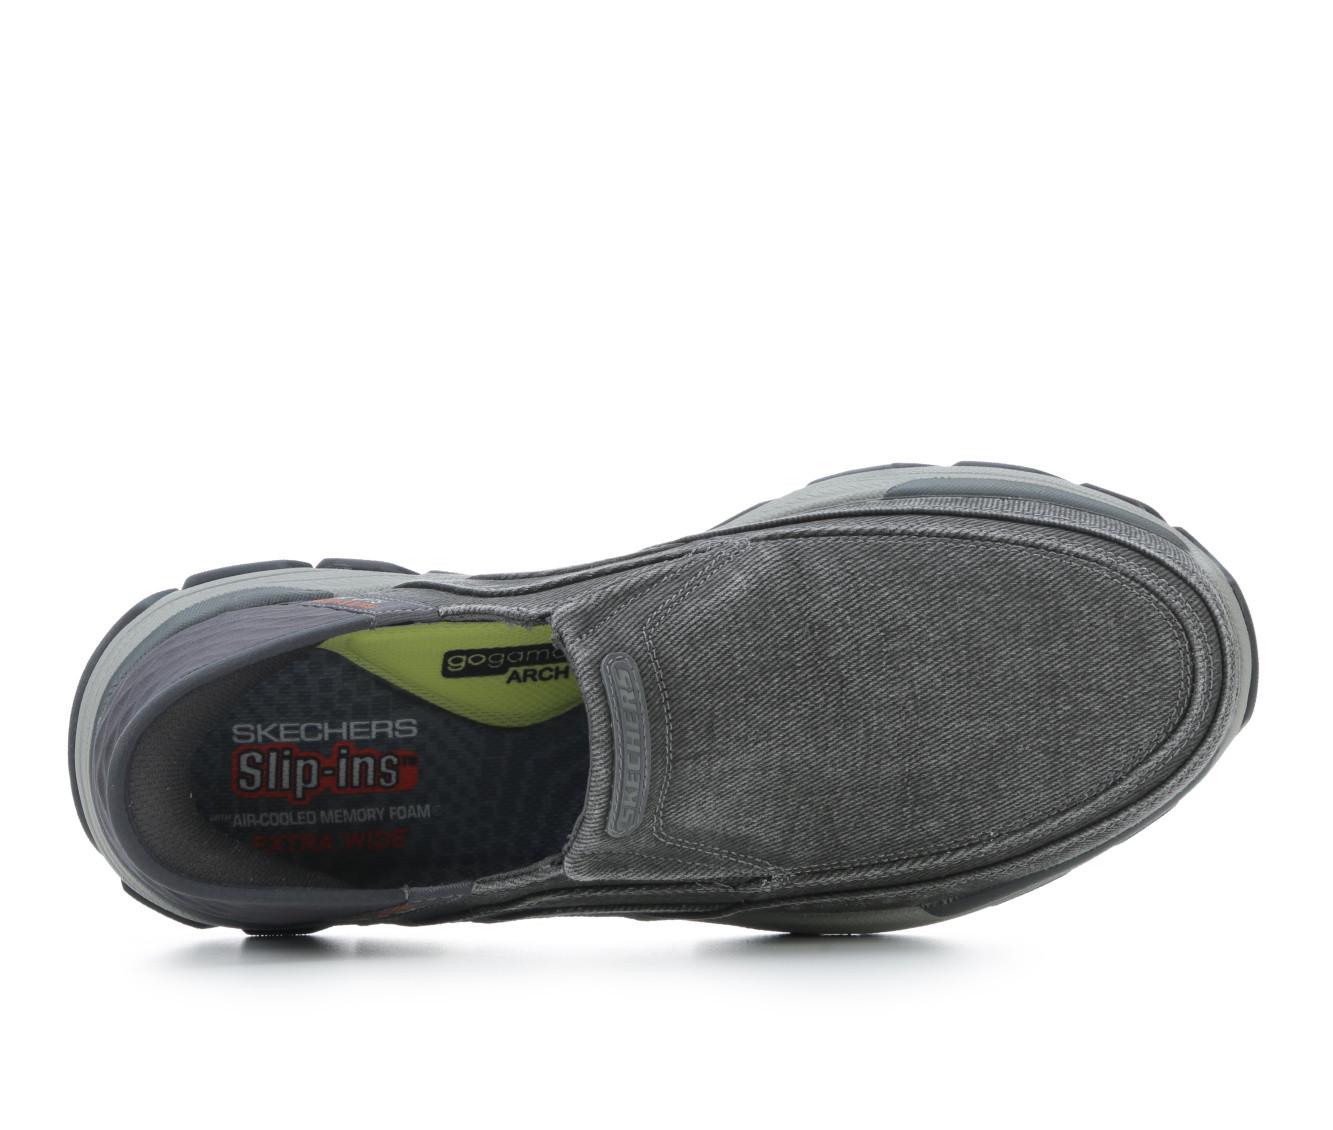 Skechers Slip-Ins Respected Holmgren Men's Wide Width Casual Shoe Grey